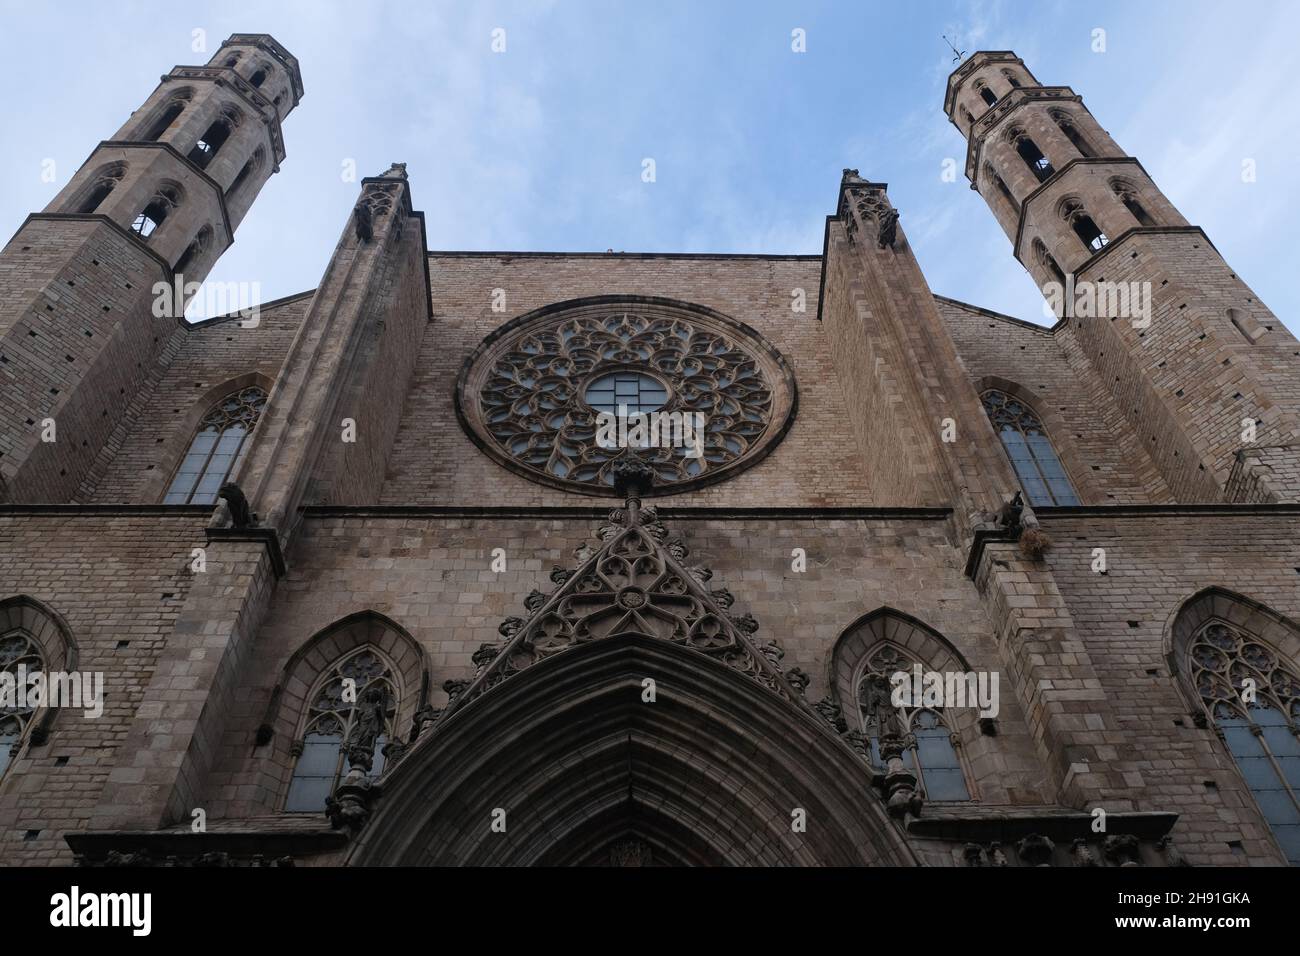 Catedral de Barcelona o Catedral de Barcelona. La Catedral de la Santa Cruz y Santa Eulalia. Arquitectura gótica. Foto de stock